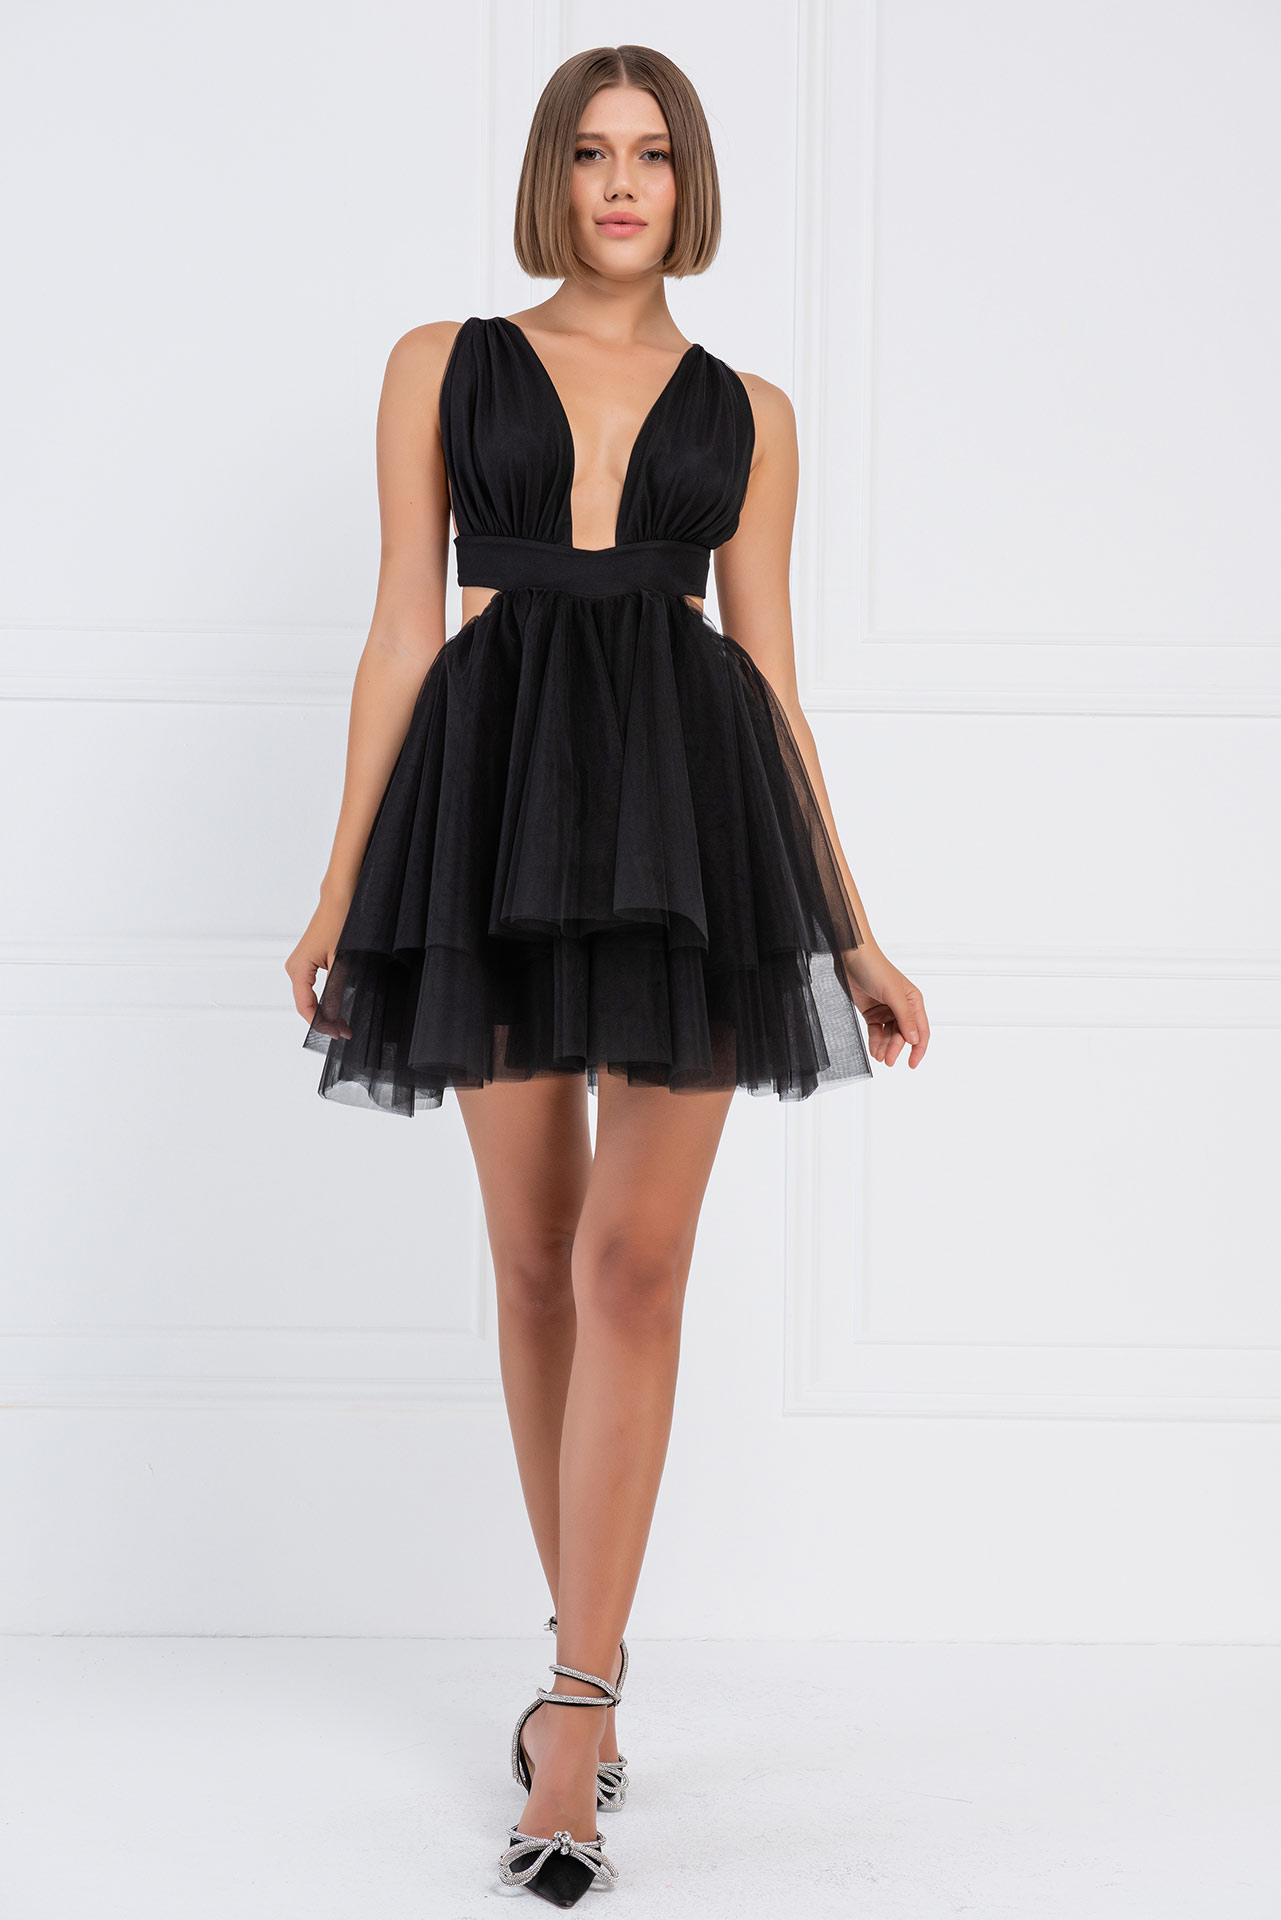 Wholesale Black Backless Mini Tutu Dress